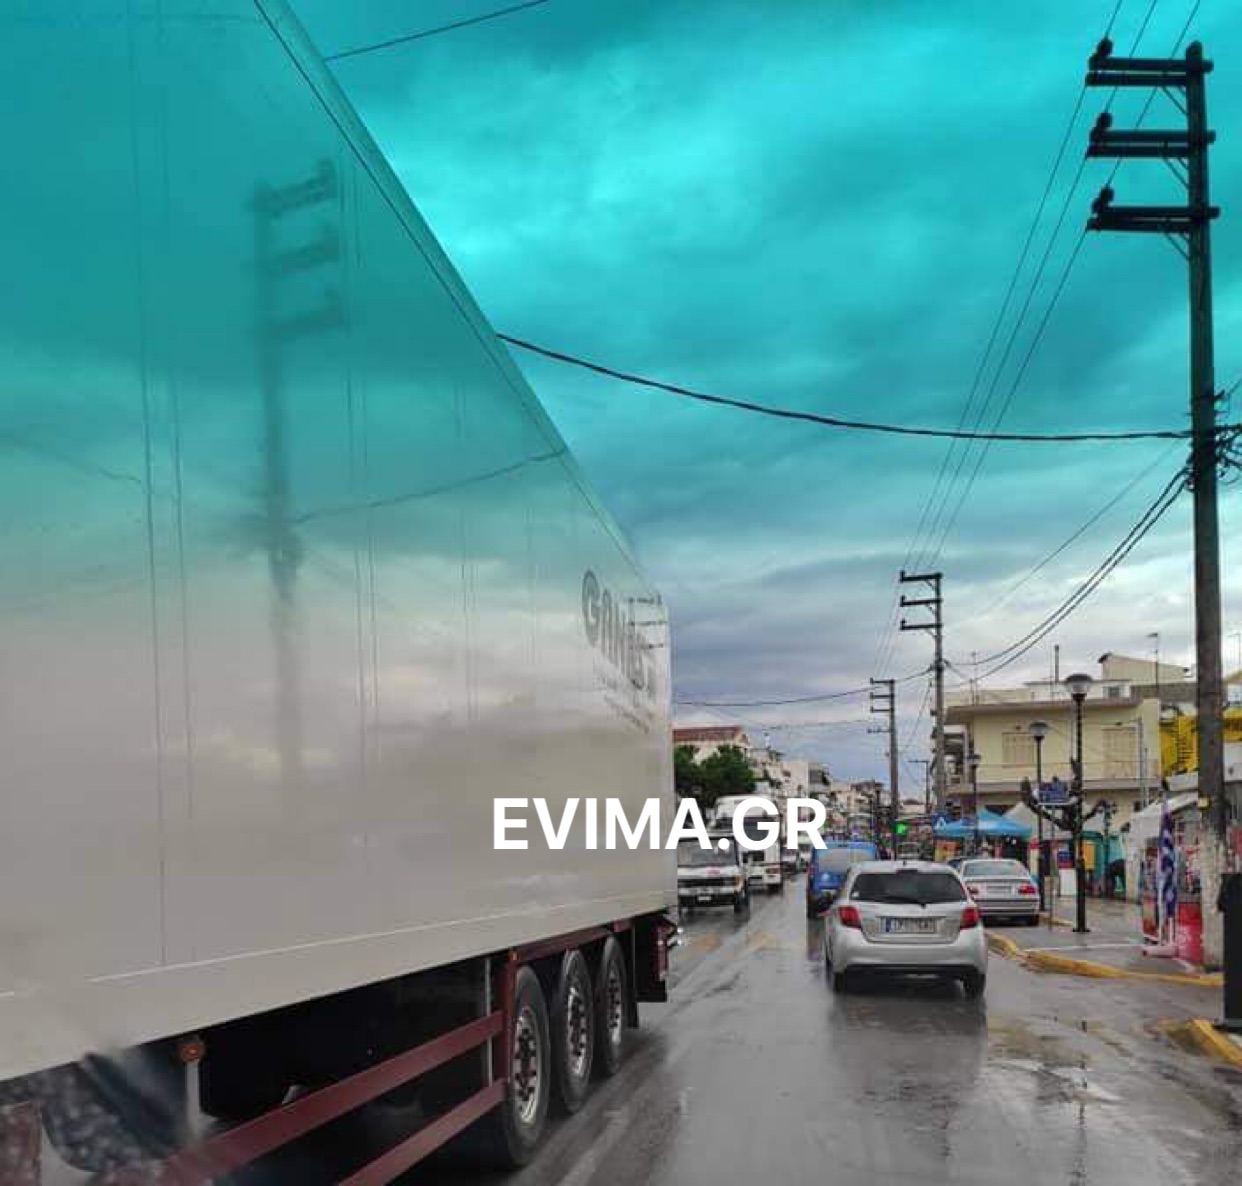 Εύβοια lockdown: Μποτιλιάρισμα στην Αρτάκη – Σημειωτόν τα αυτοκίνητα [εικόνες]